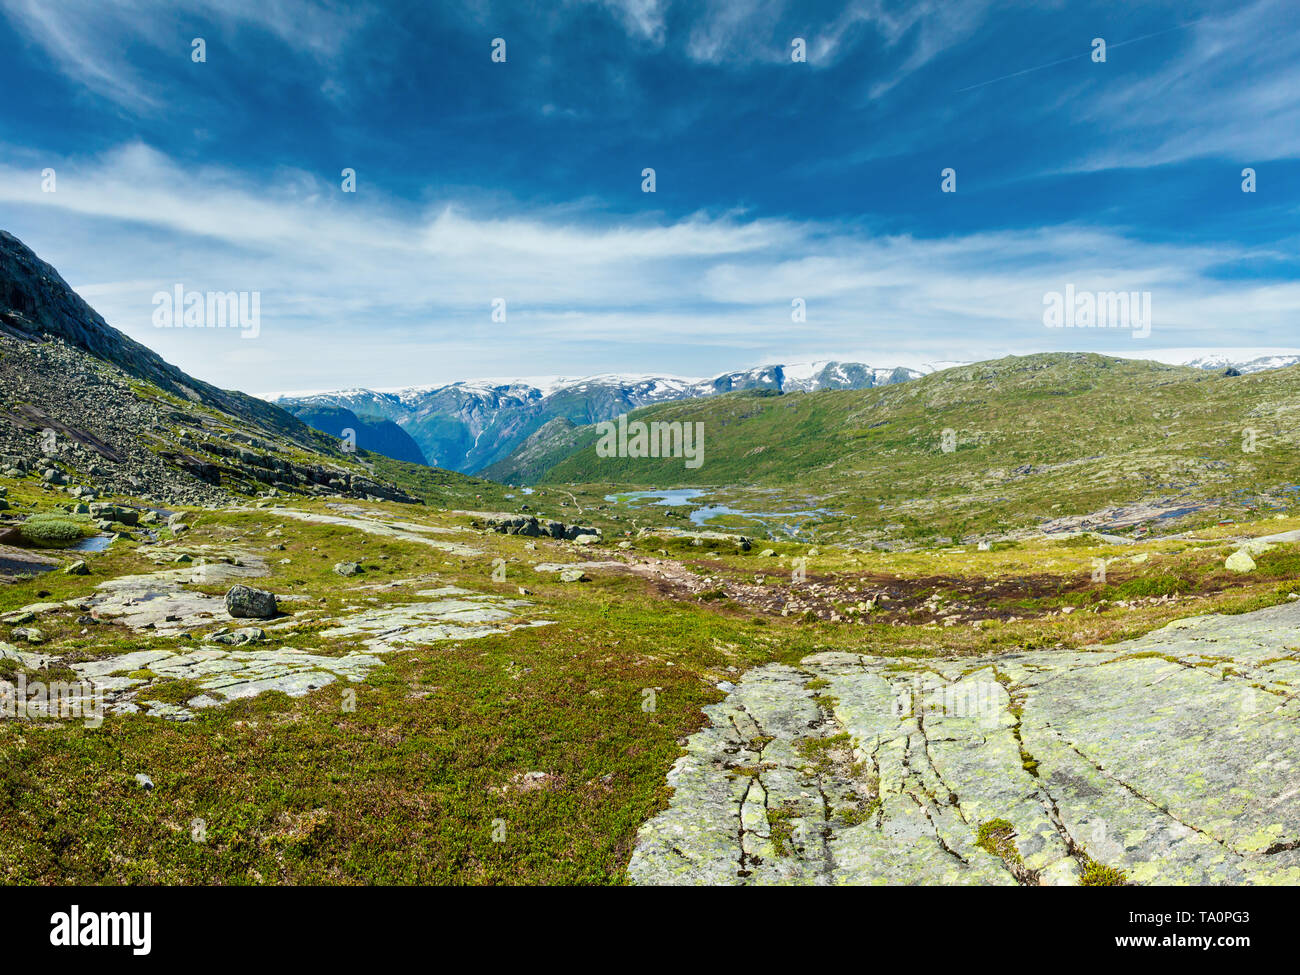 Estate Roldal highlands plateau paesaggio di montagna con piccoli laghi su pendenza (Norvegia, sul sentiero escursionistico per Trolltunga da Odda). Foto Stock